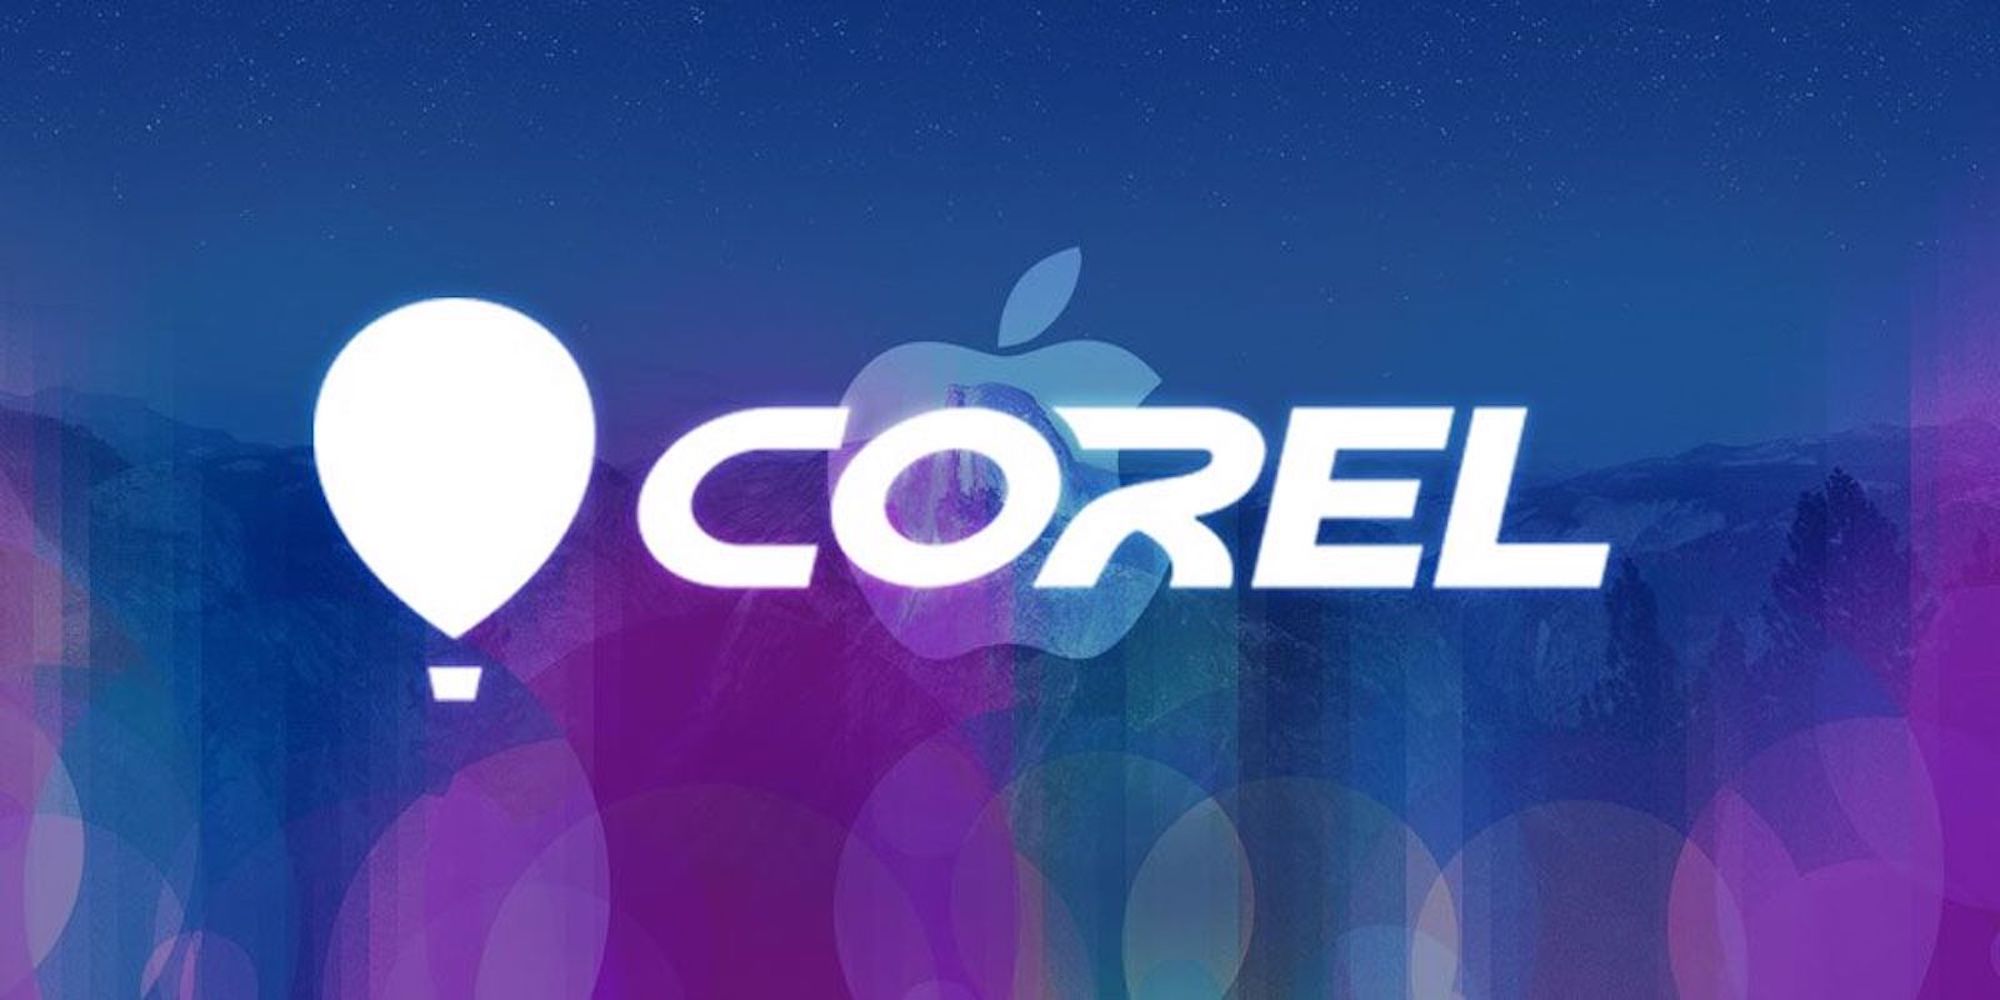 coreldraw for mac torrent download